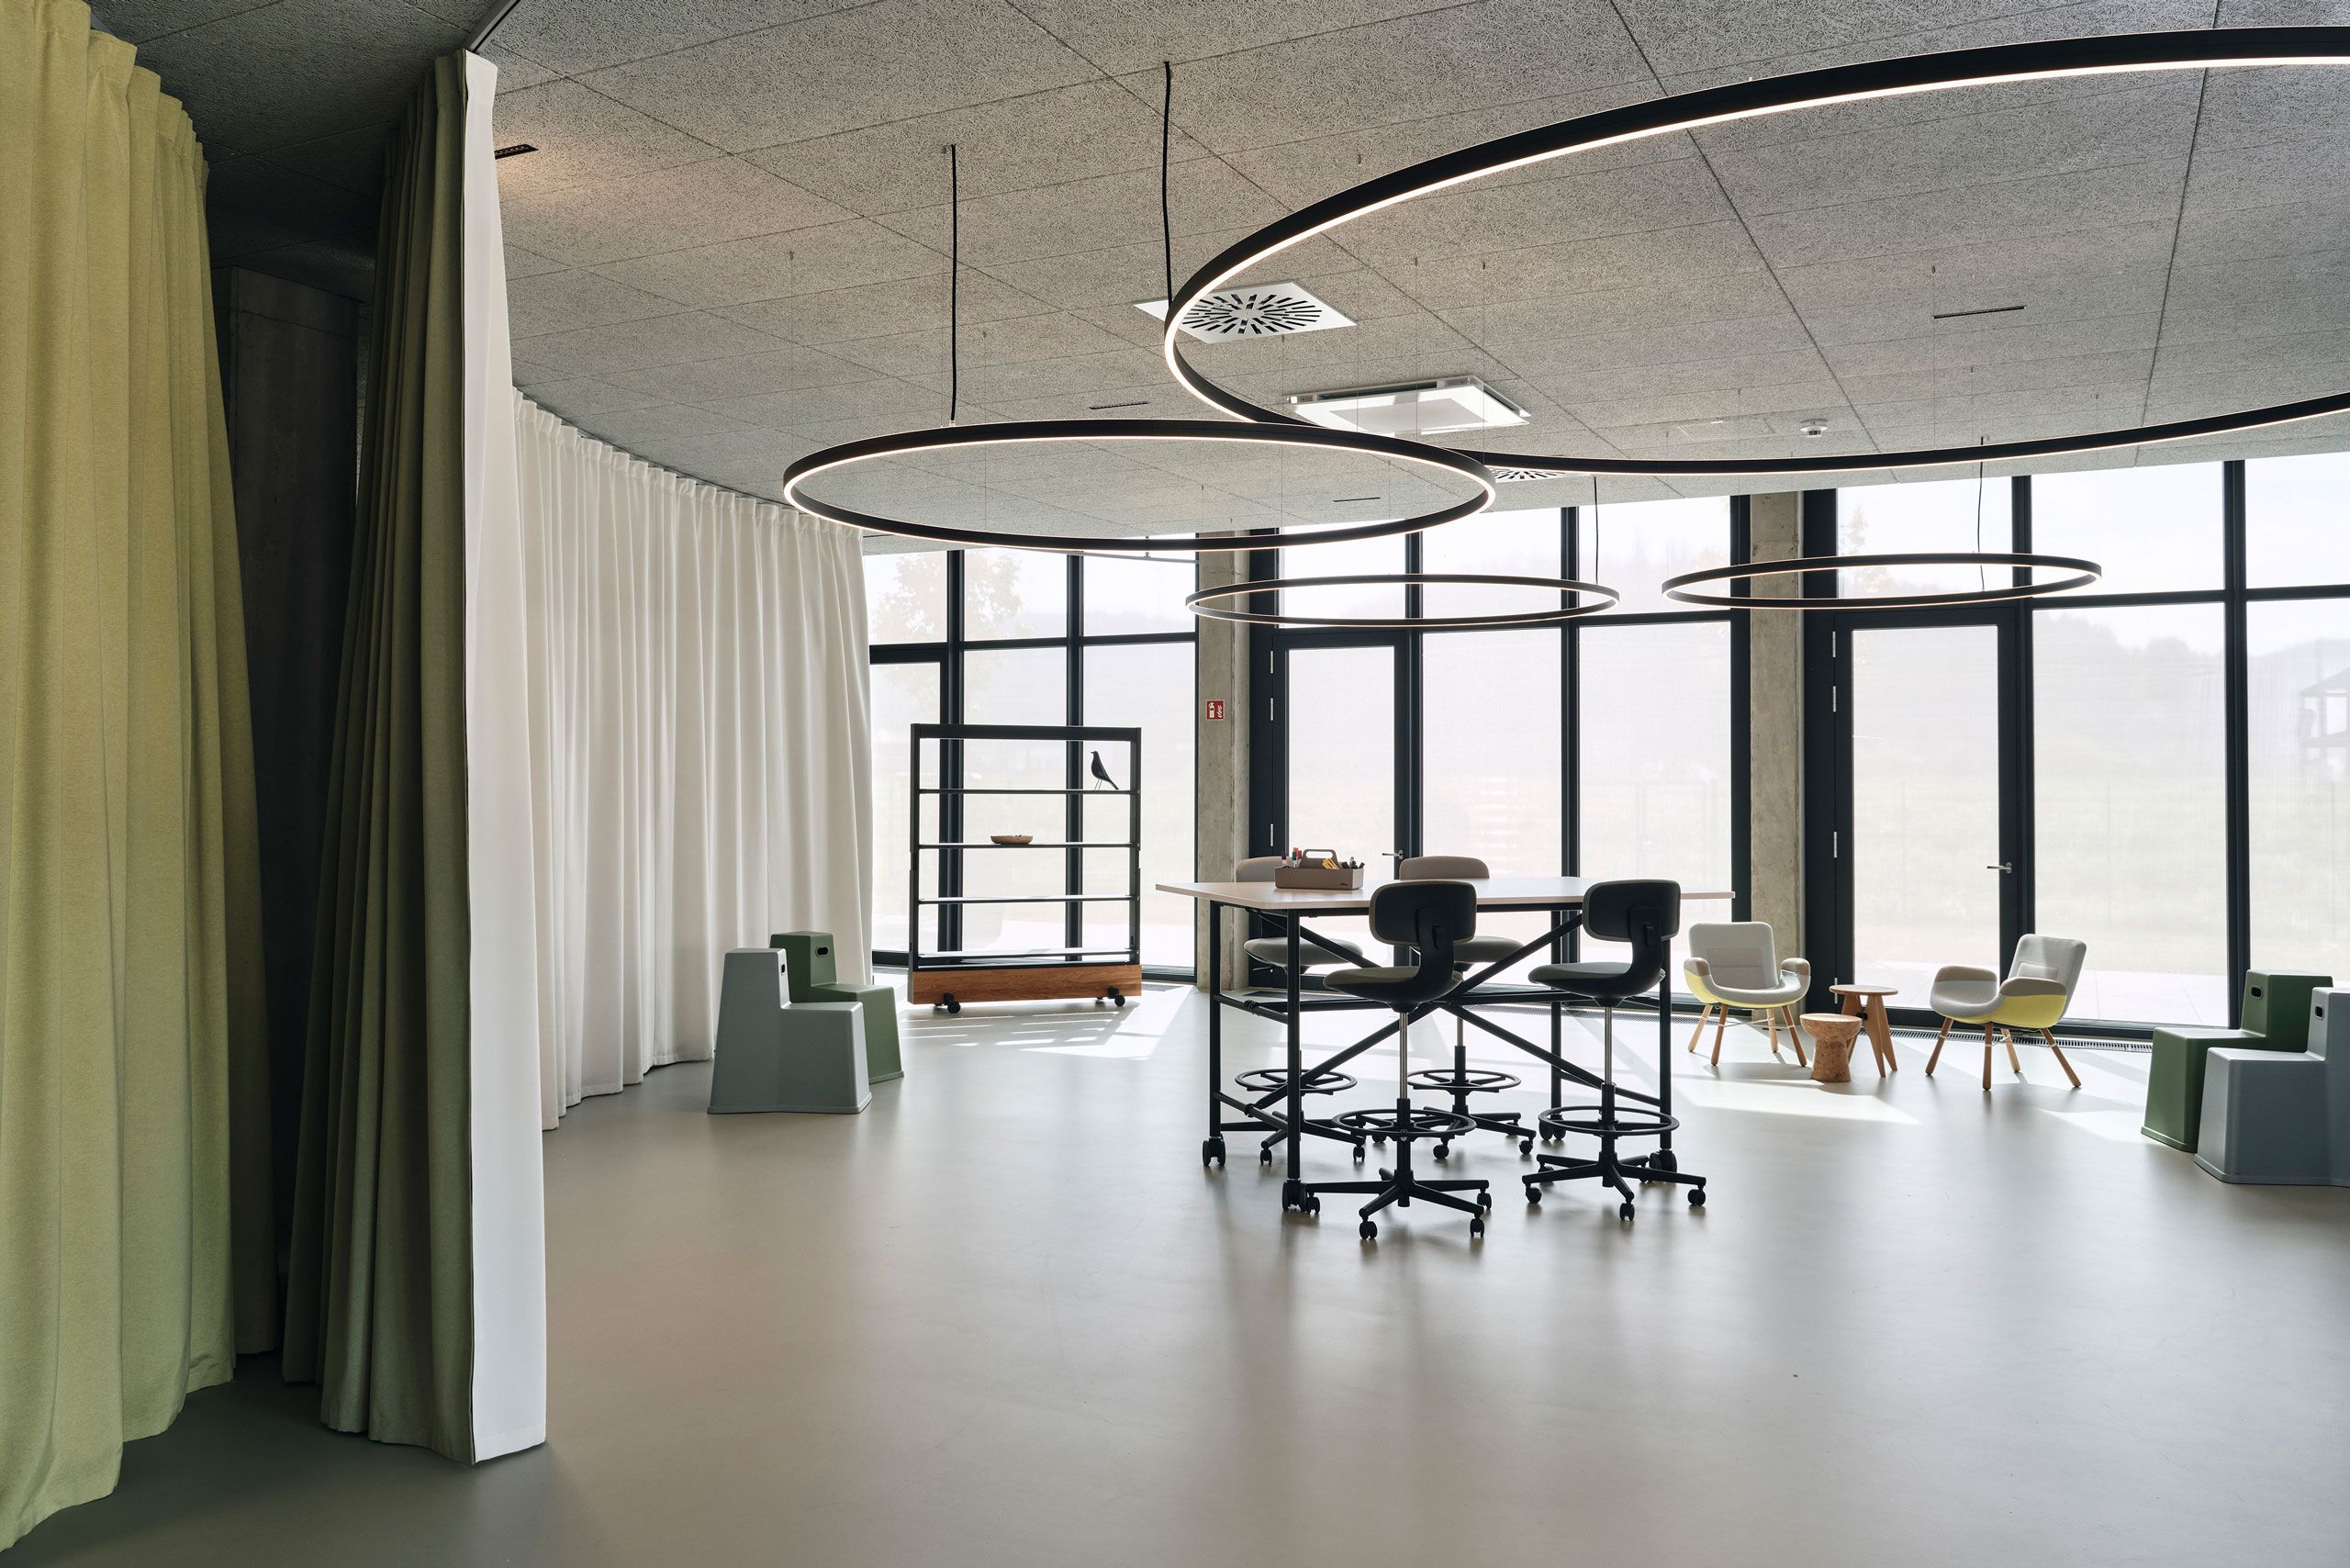 Grosszügige Bürosituation welche mit einem Vorhang flexibel akustisch und räumlich unterteilt werden kann, zum Beispiel für Sitzungen.